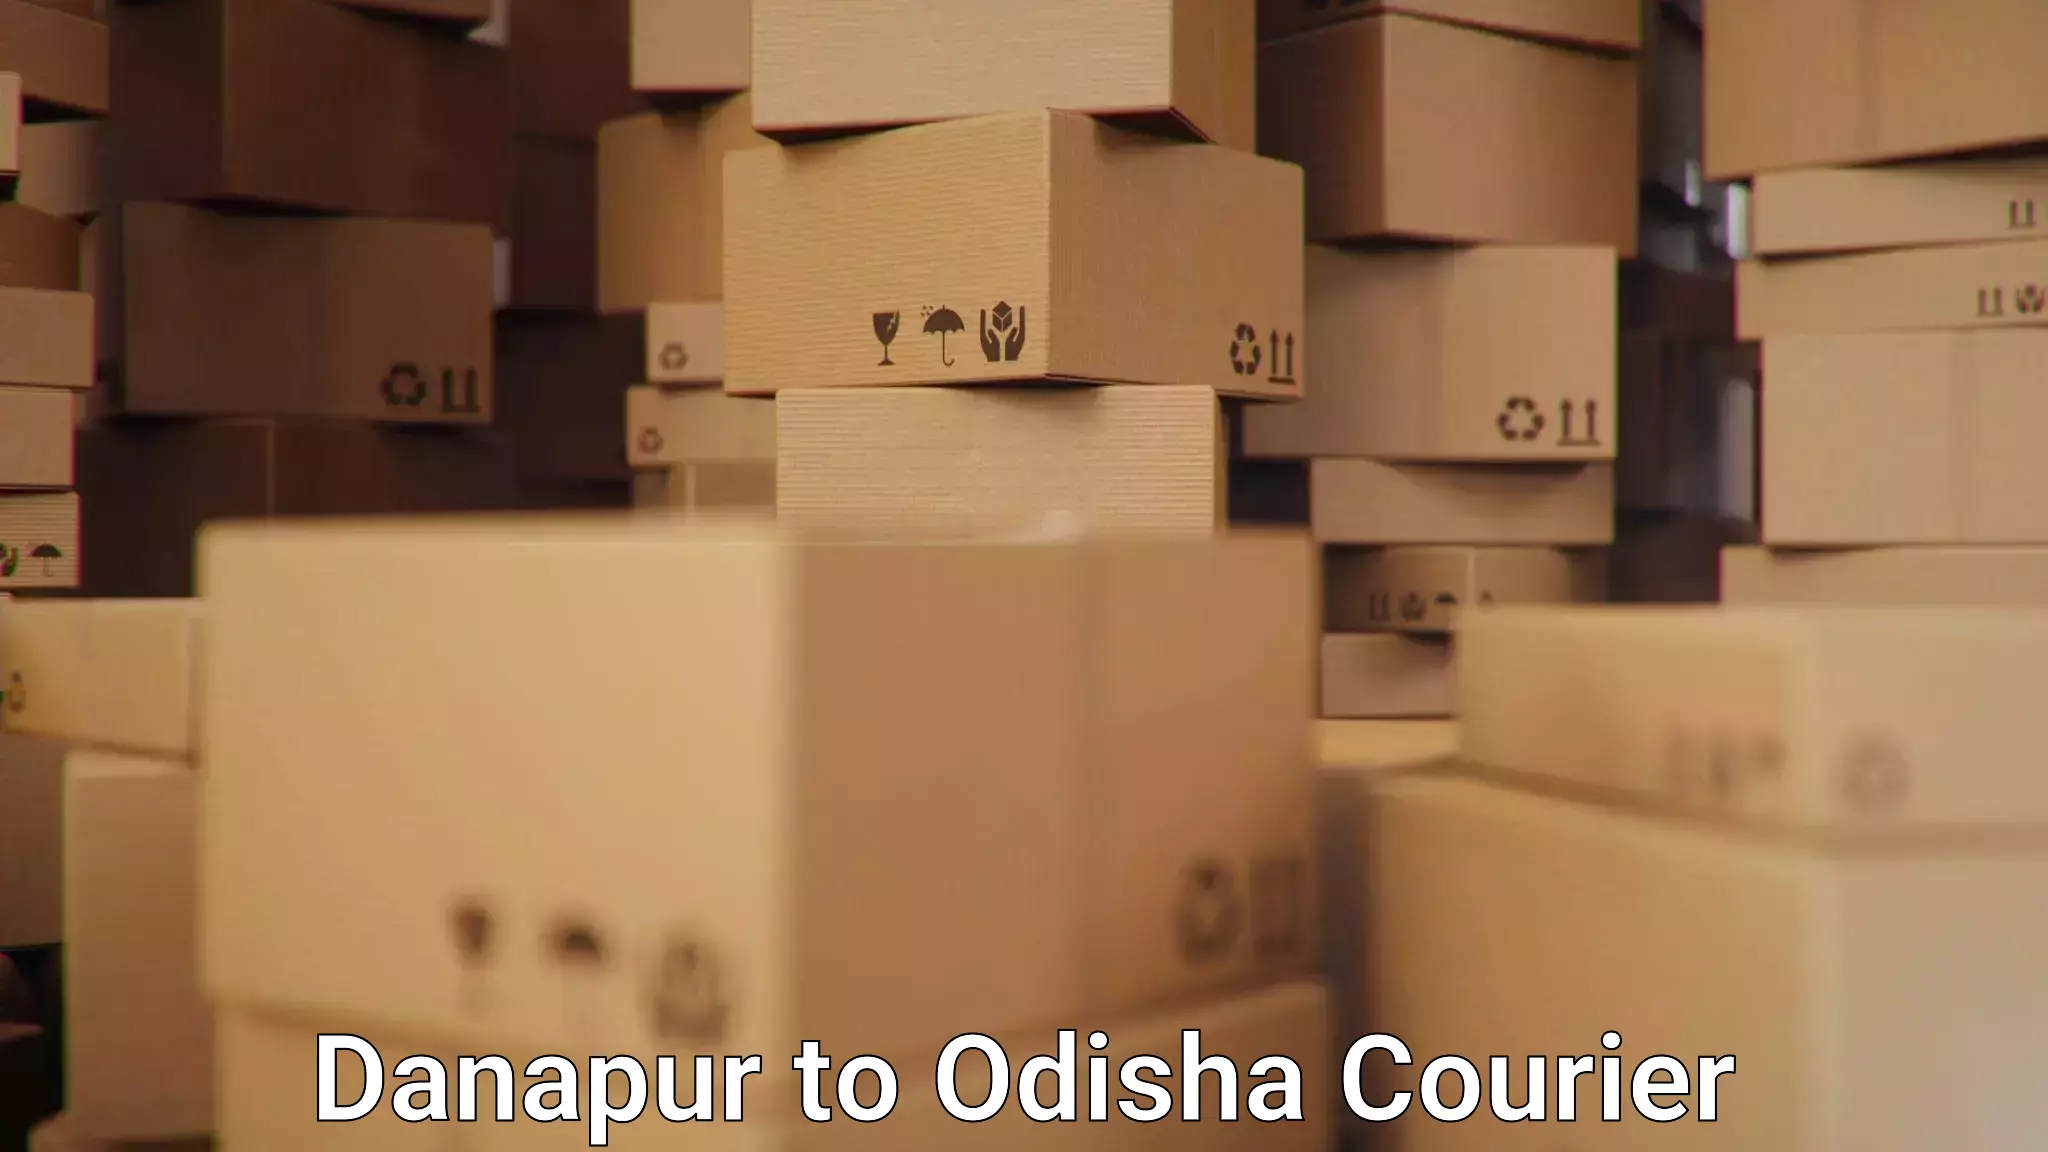 Courier service comparison Danapur to Odisha